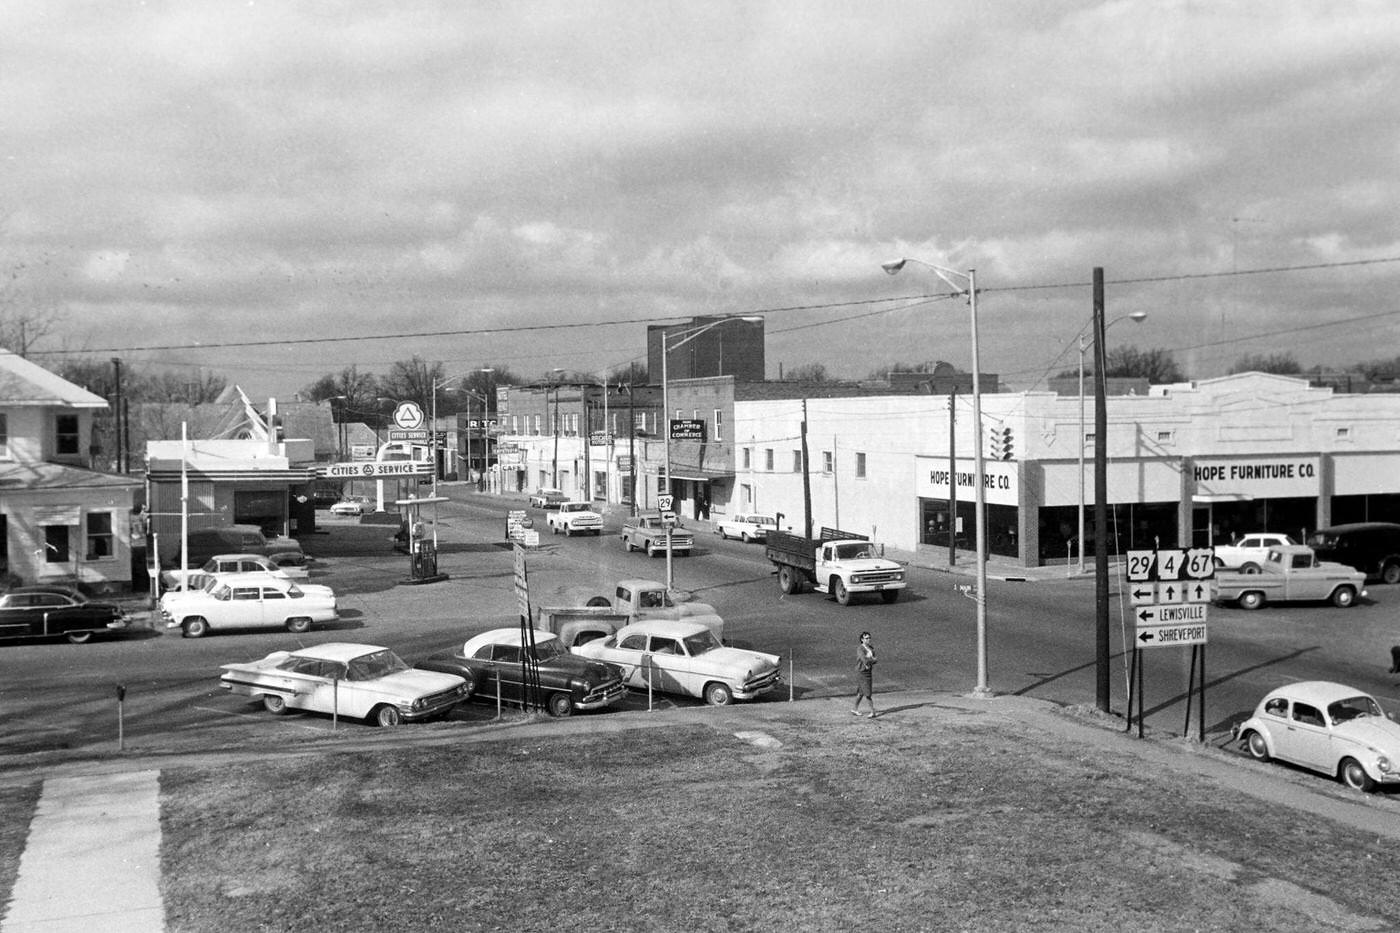 Street view around Dallas, Texas, 1964.